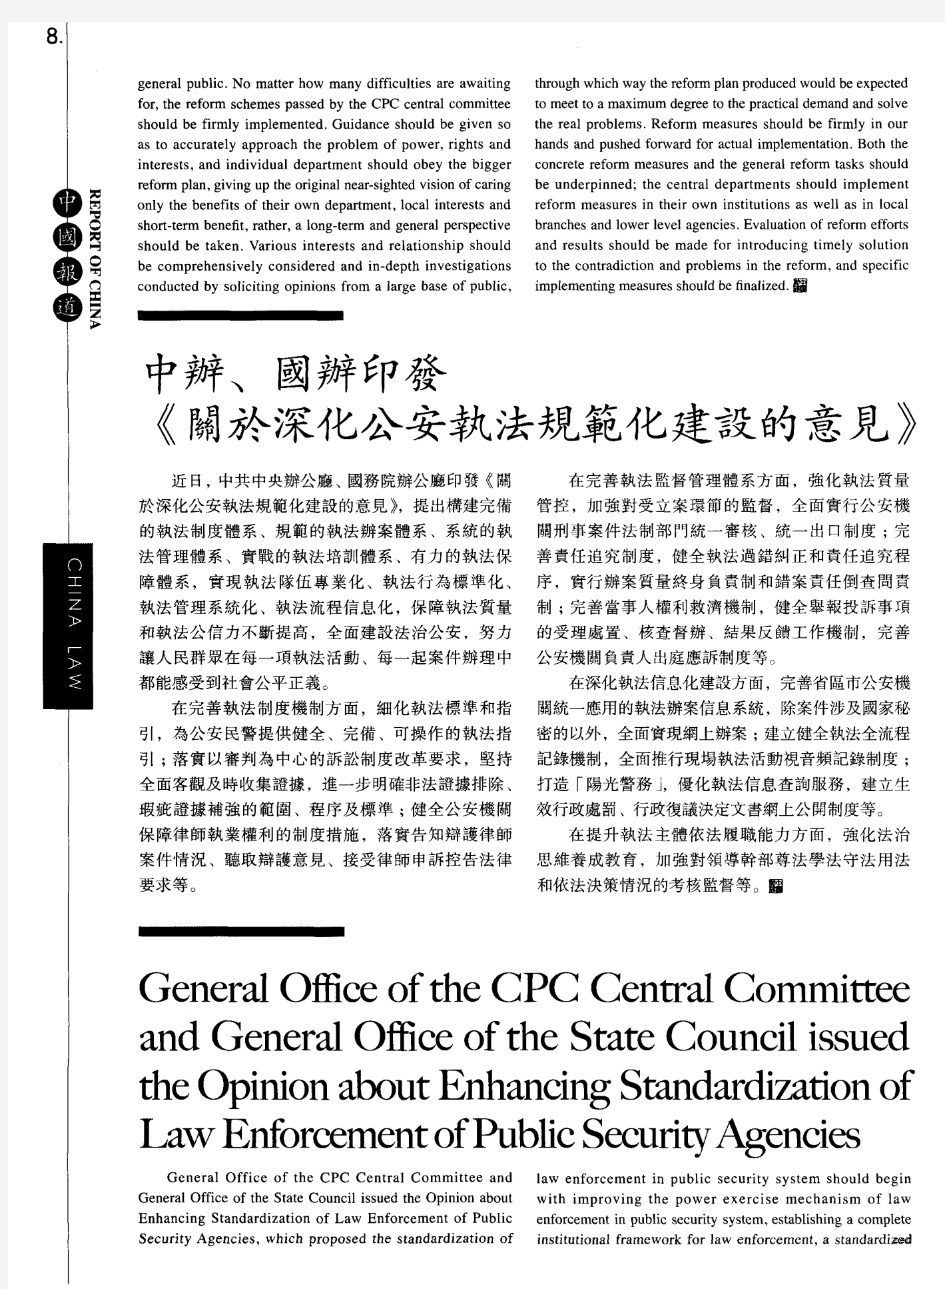 中办、国办印发《关于深化公安执法规范化建设的意见》